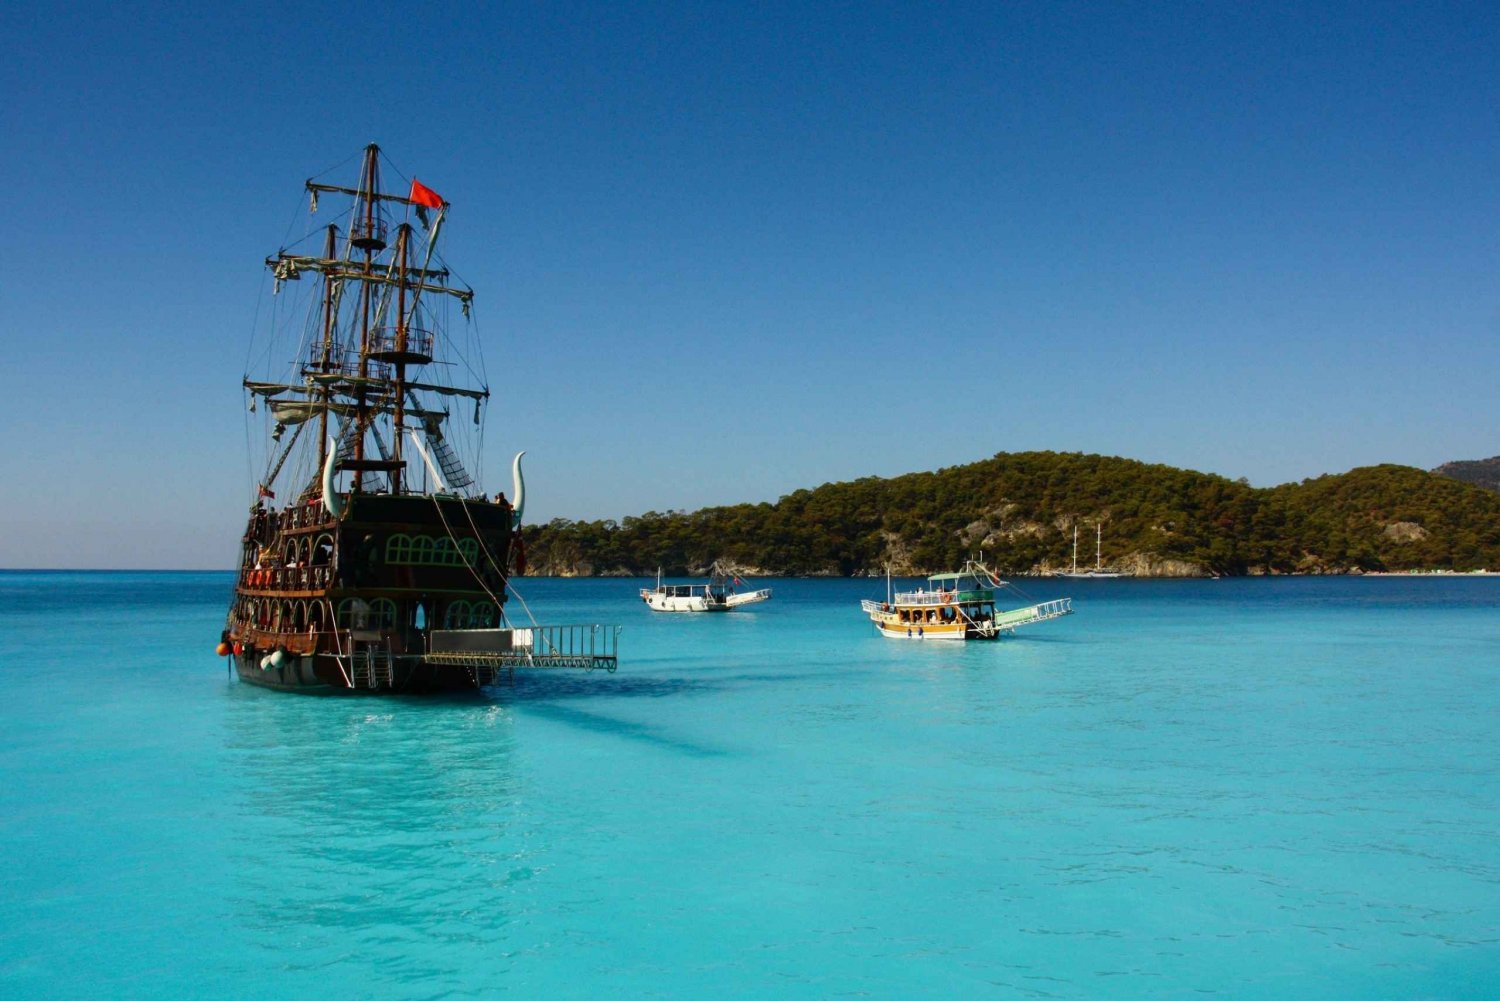 Ölüdeniz: Piratbåtskryssning med badstopp och lunch